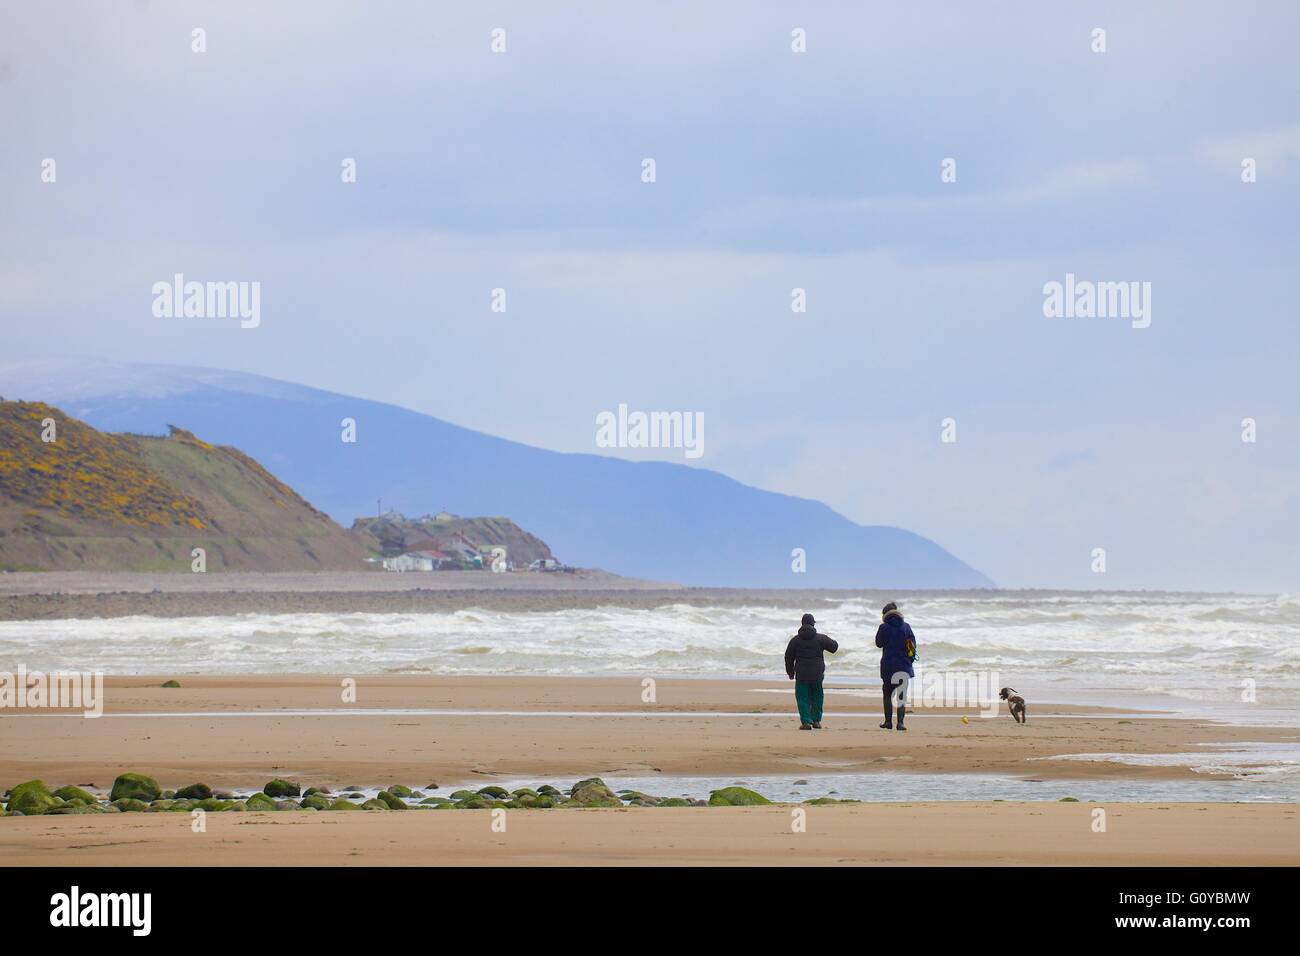 Saint les abeilles. Couple walking Dog sur la plage. Cumbria, Angleterre, Royaume-Uni, Europe. Banque D'Images